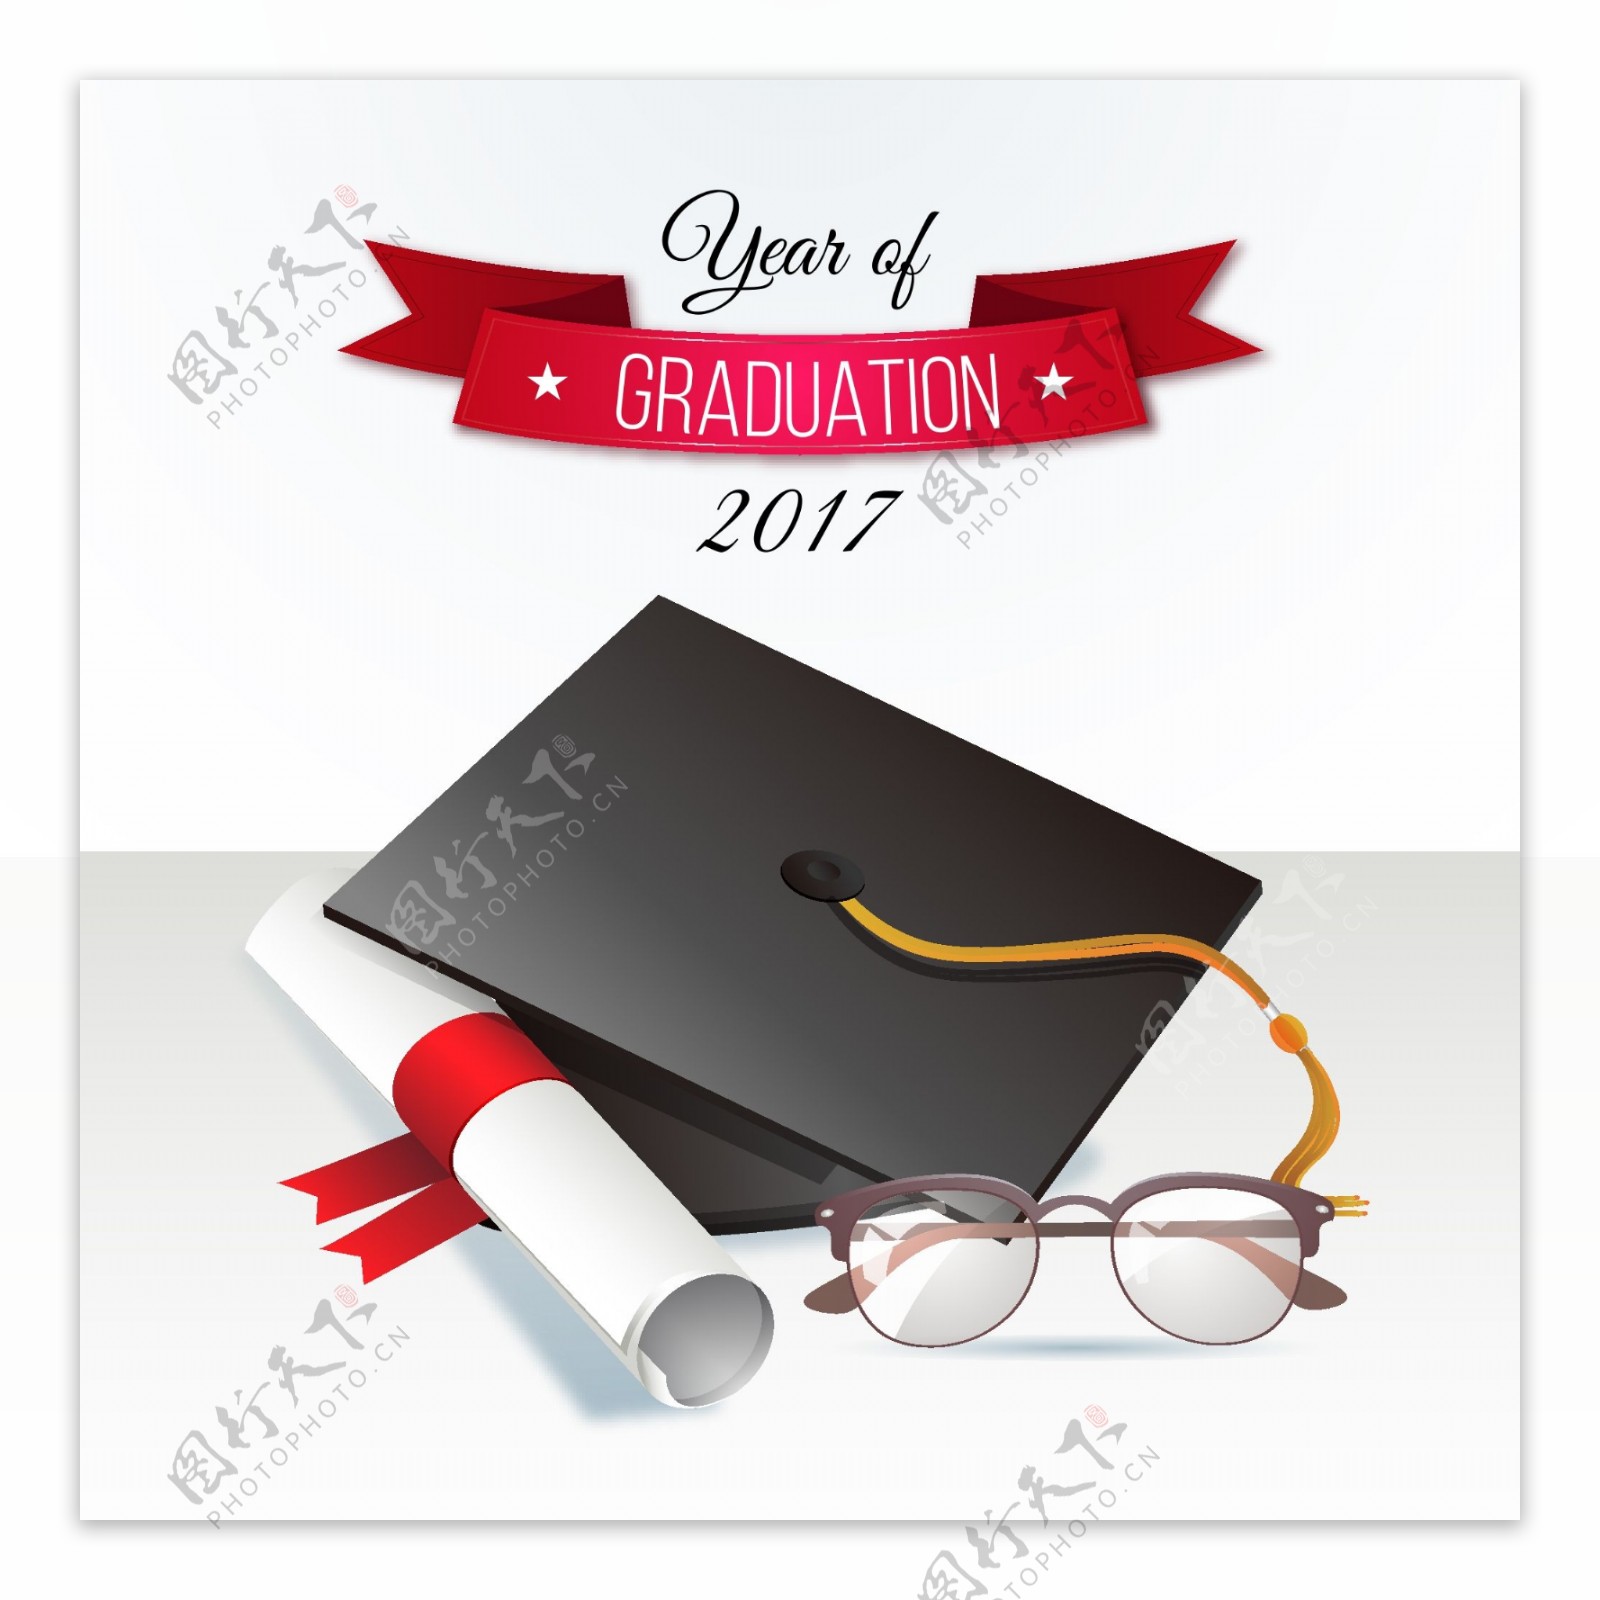 2017毕业帽与毕业证书